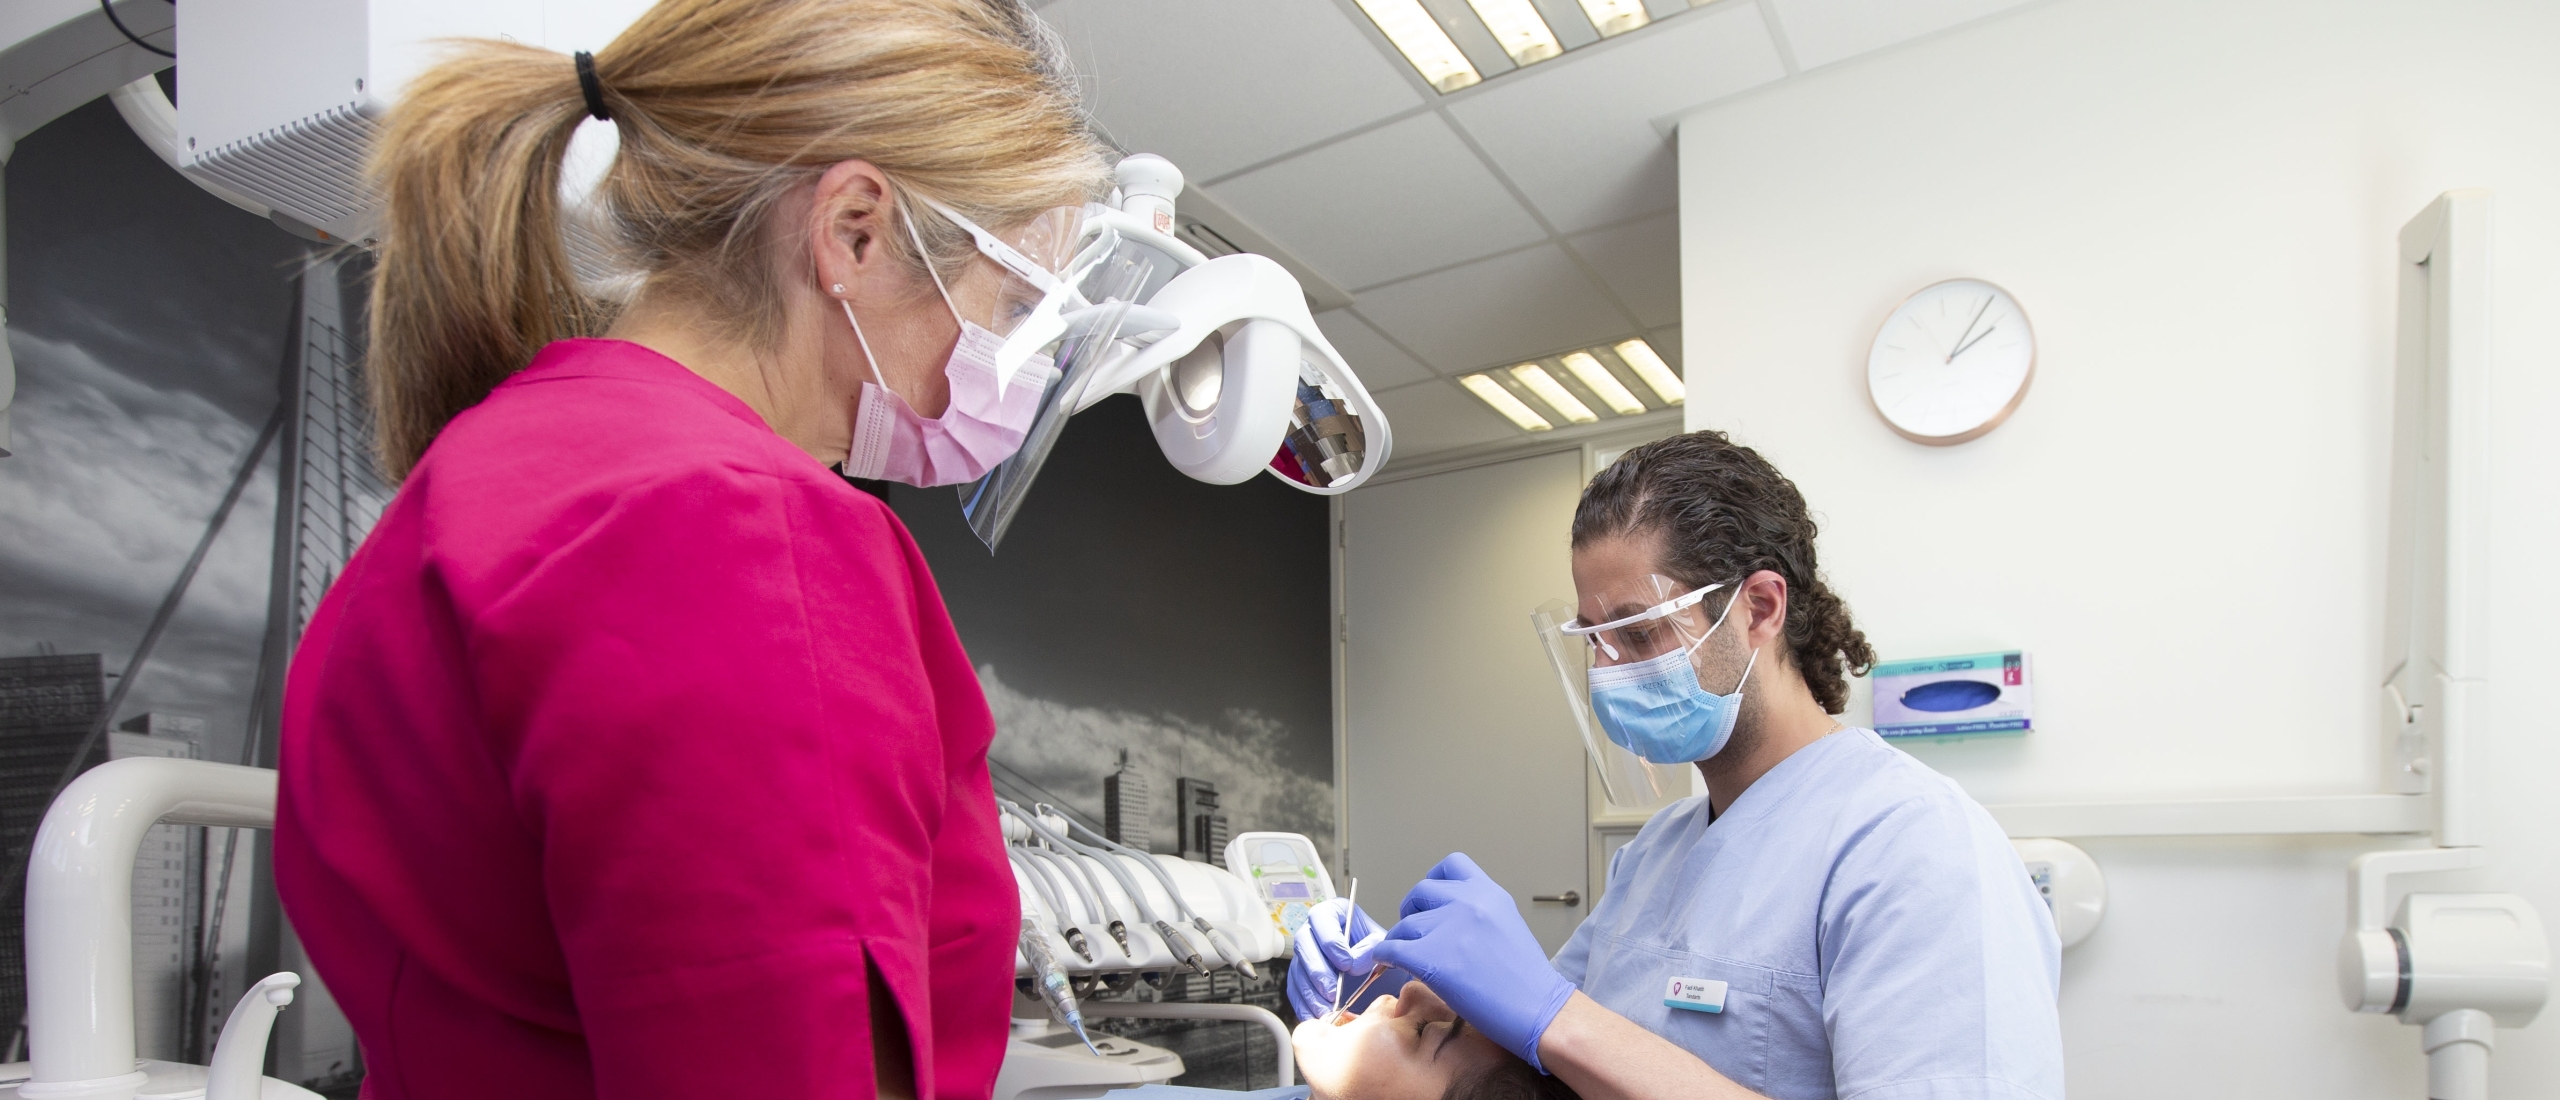 Zeeland wil snel overleg met Rijk over tandartsentekort